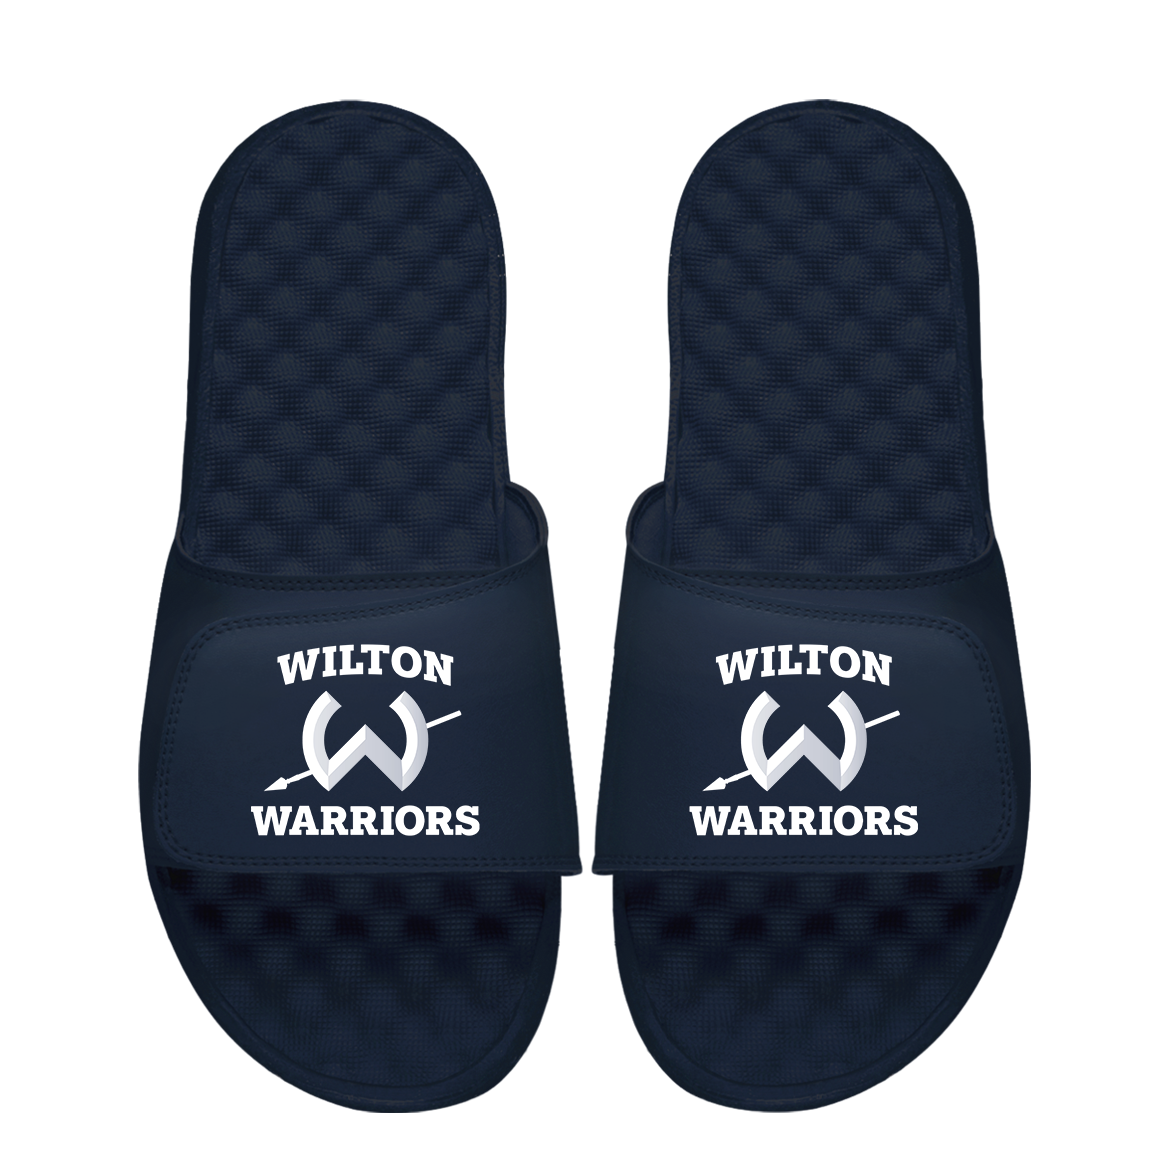 Wilton Warriors Primary